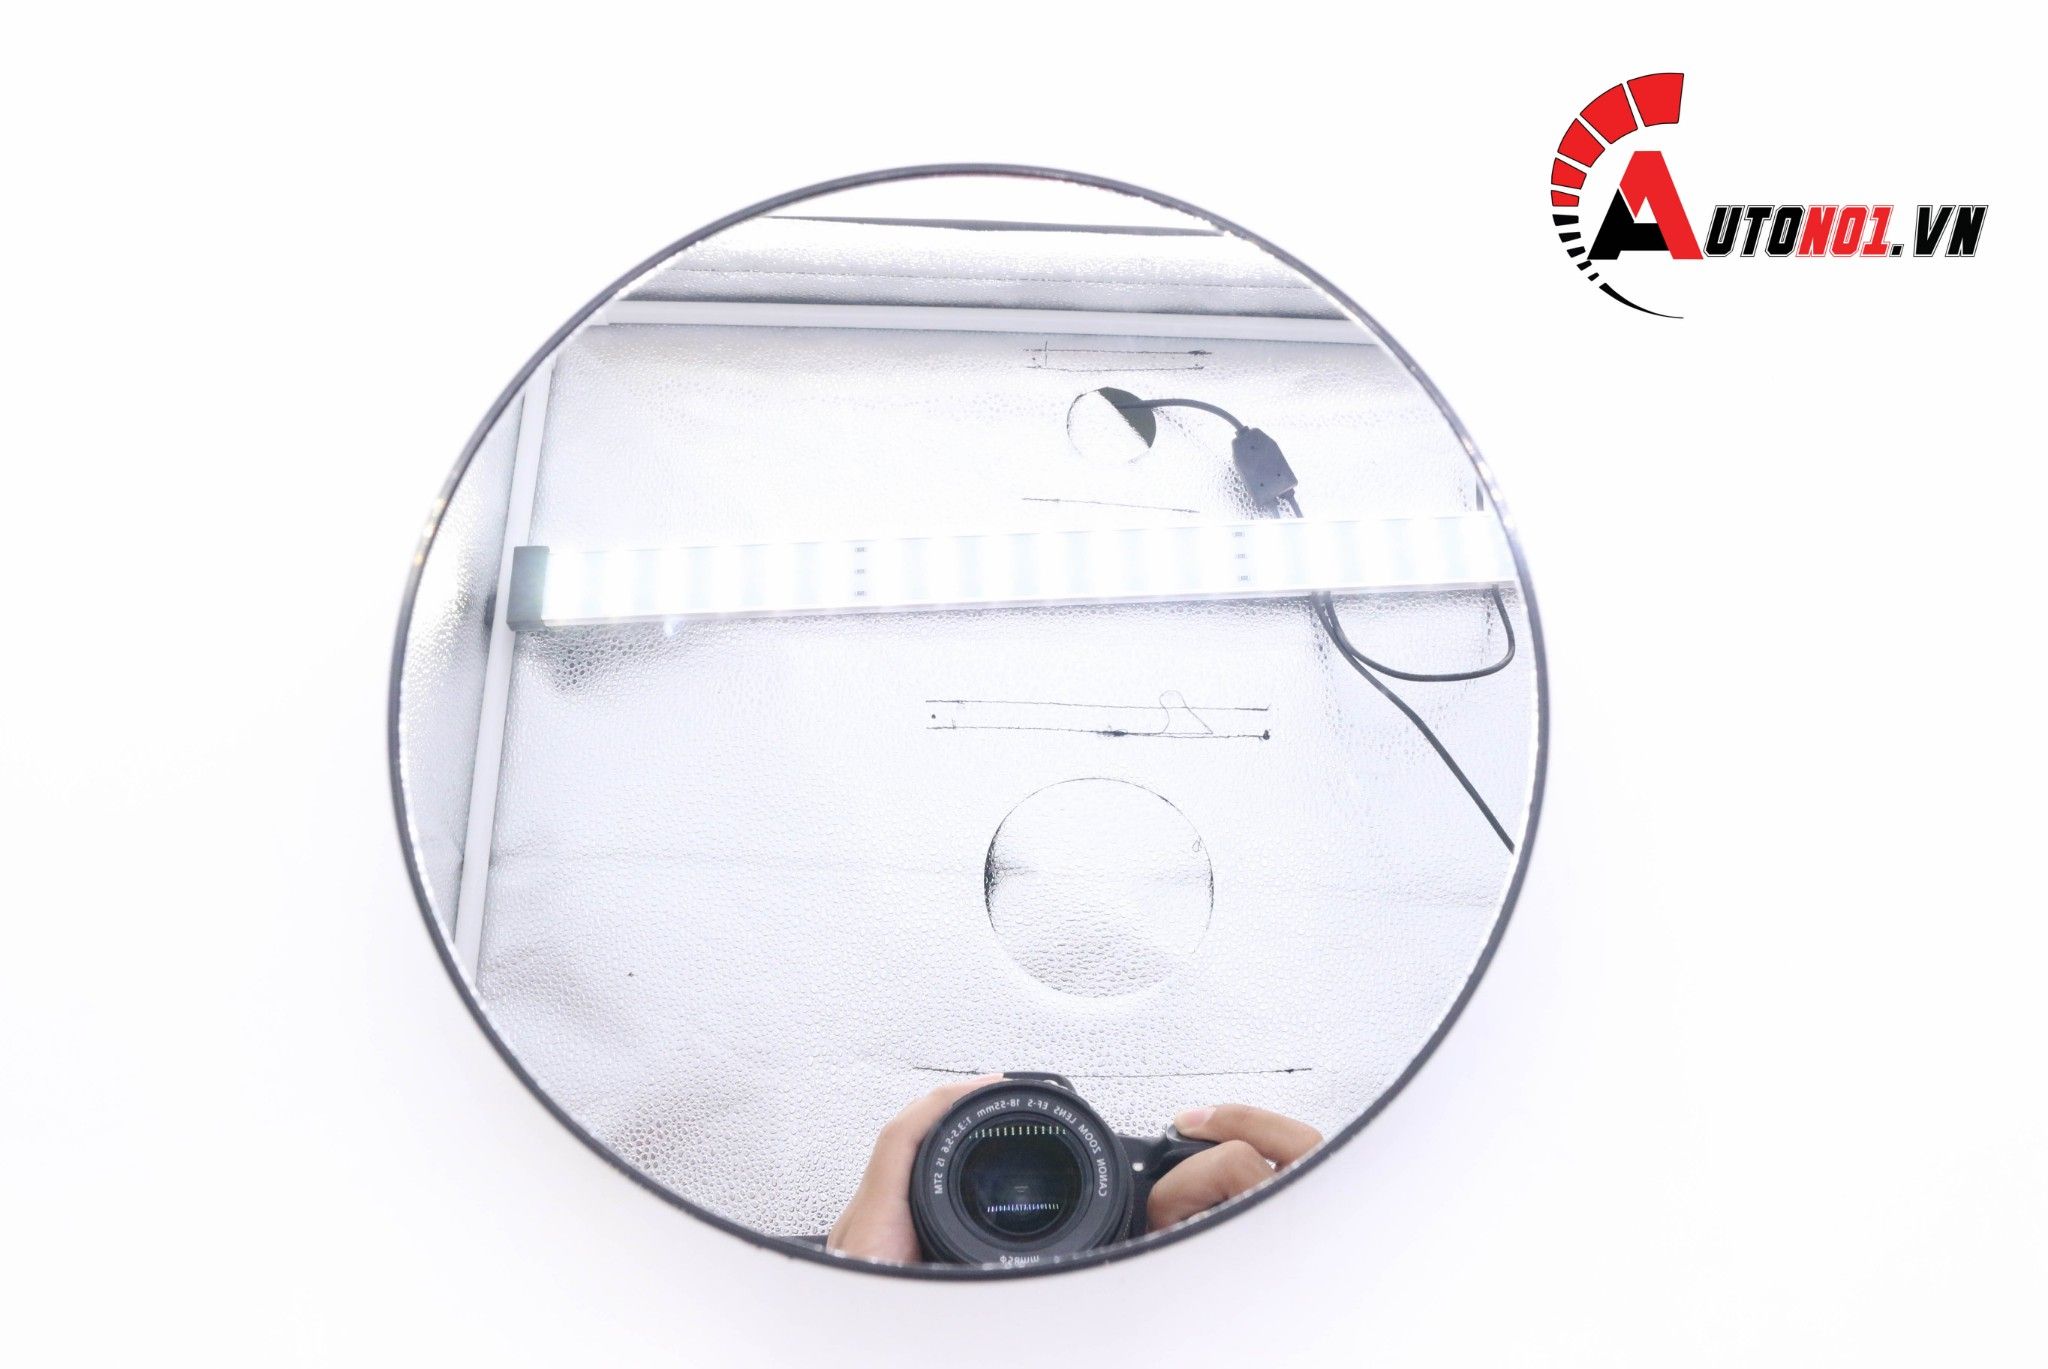  Phụ kiện đế xoay sản phẩm 360 độ màu đen mặt gương dùng pin và điện đường kính 20cm 5369 